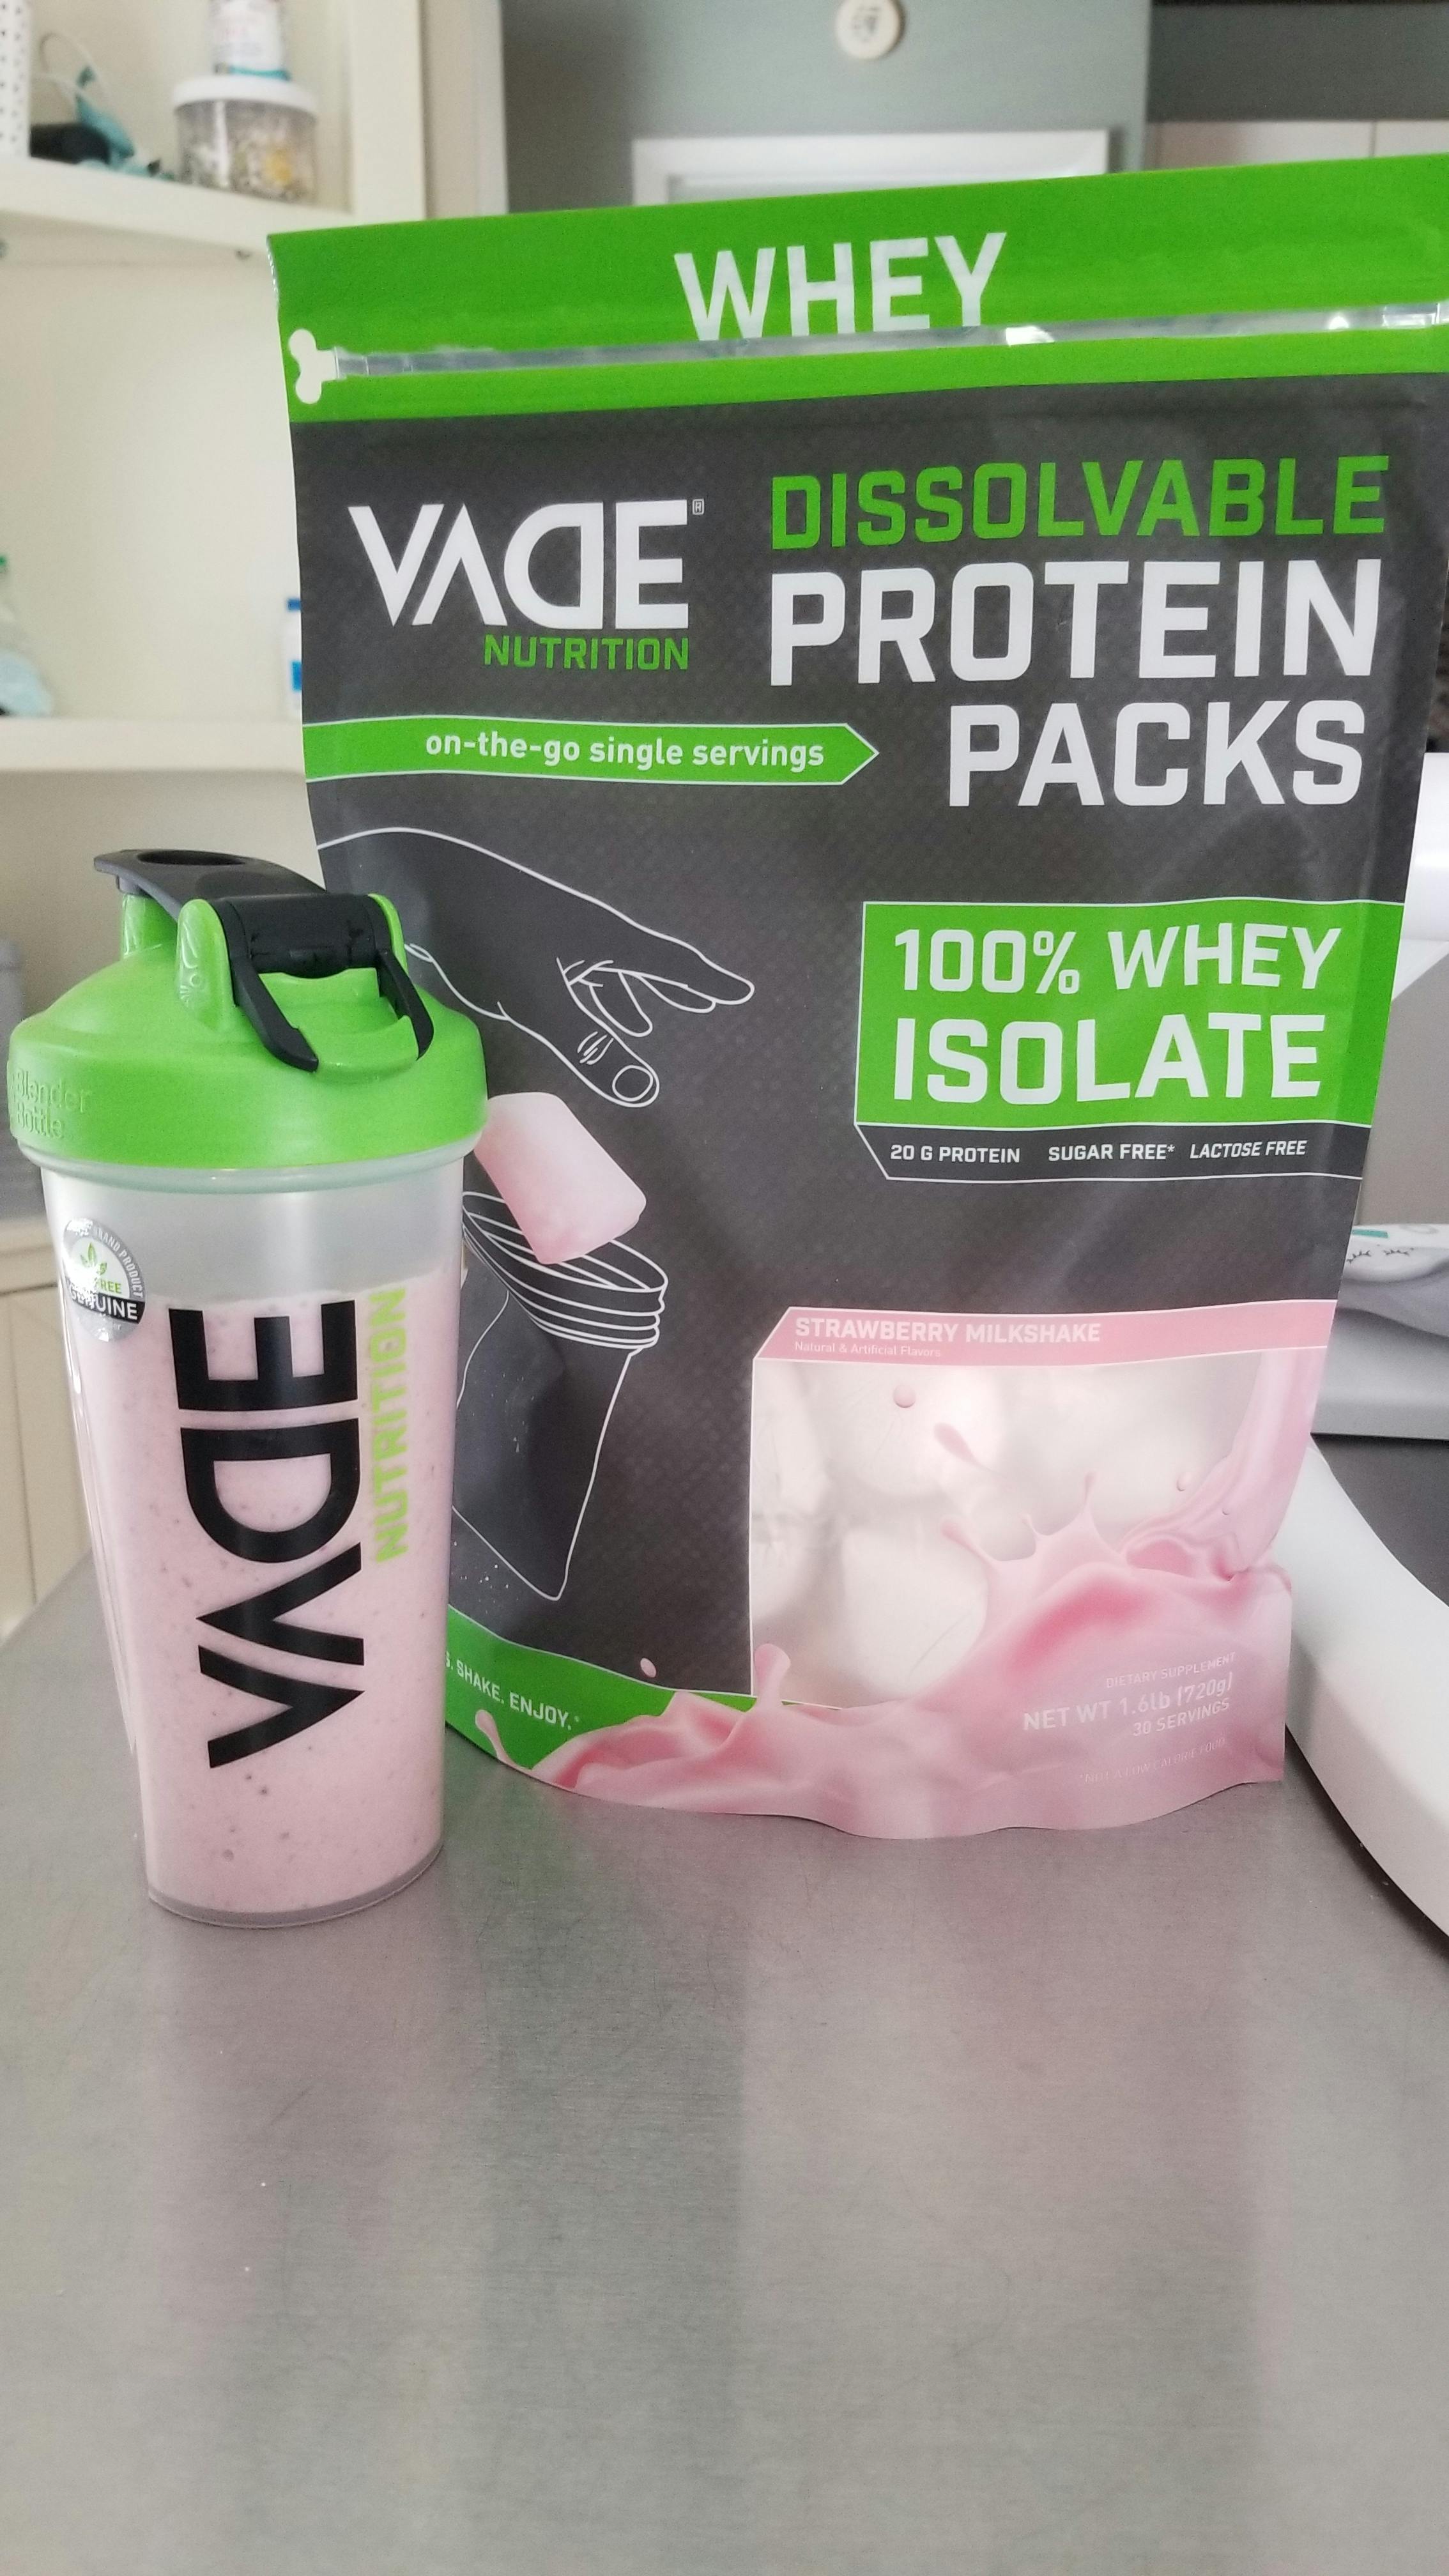 Vade Nutrition, Dissolvable Protein Packs, 100% Isolate, Strawberry Milkshake